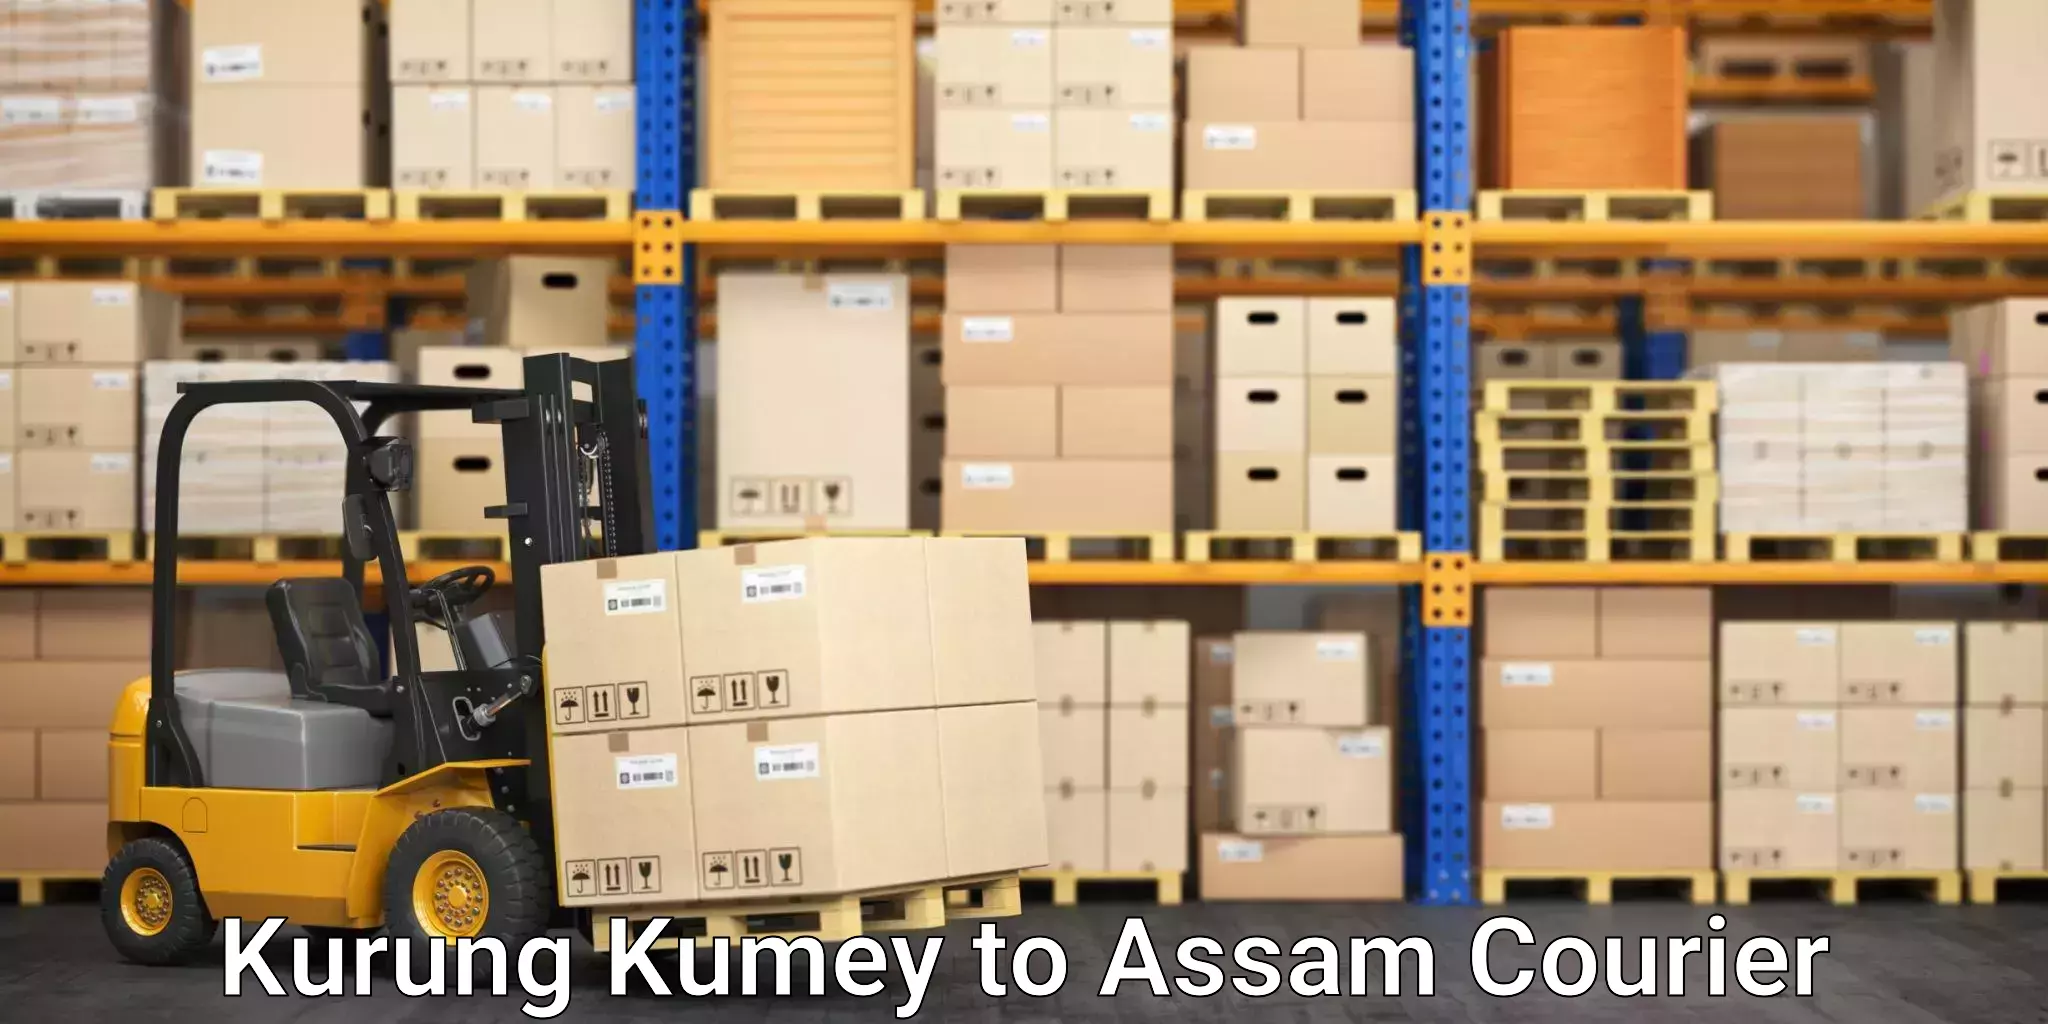 Courier dispatch services Kurung Kumey to Lala Assam